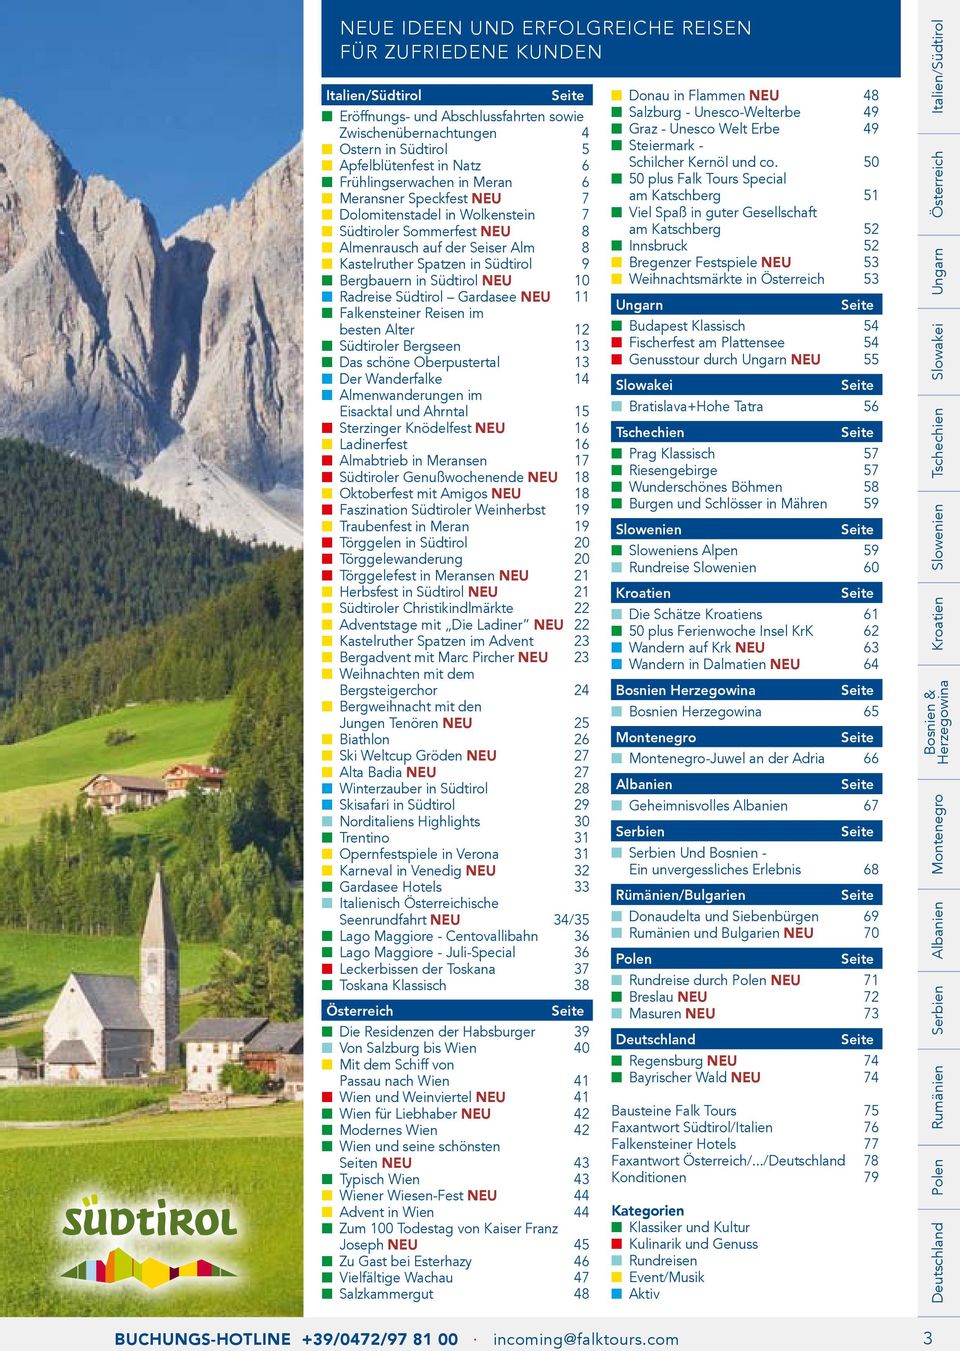 Südtirol NEU 10 Radreise Südtirol Gardasee NEU 11 Falkensteiner Reisen im besten Alter 12 Südtiroler Bergseen 13 Das schöne Oberpustertal 13 Der Wanderfalke 14 Almenwanderungen im Eisacktal und